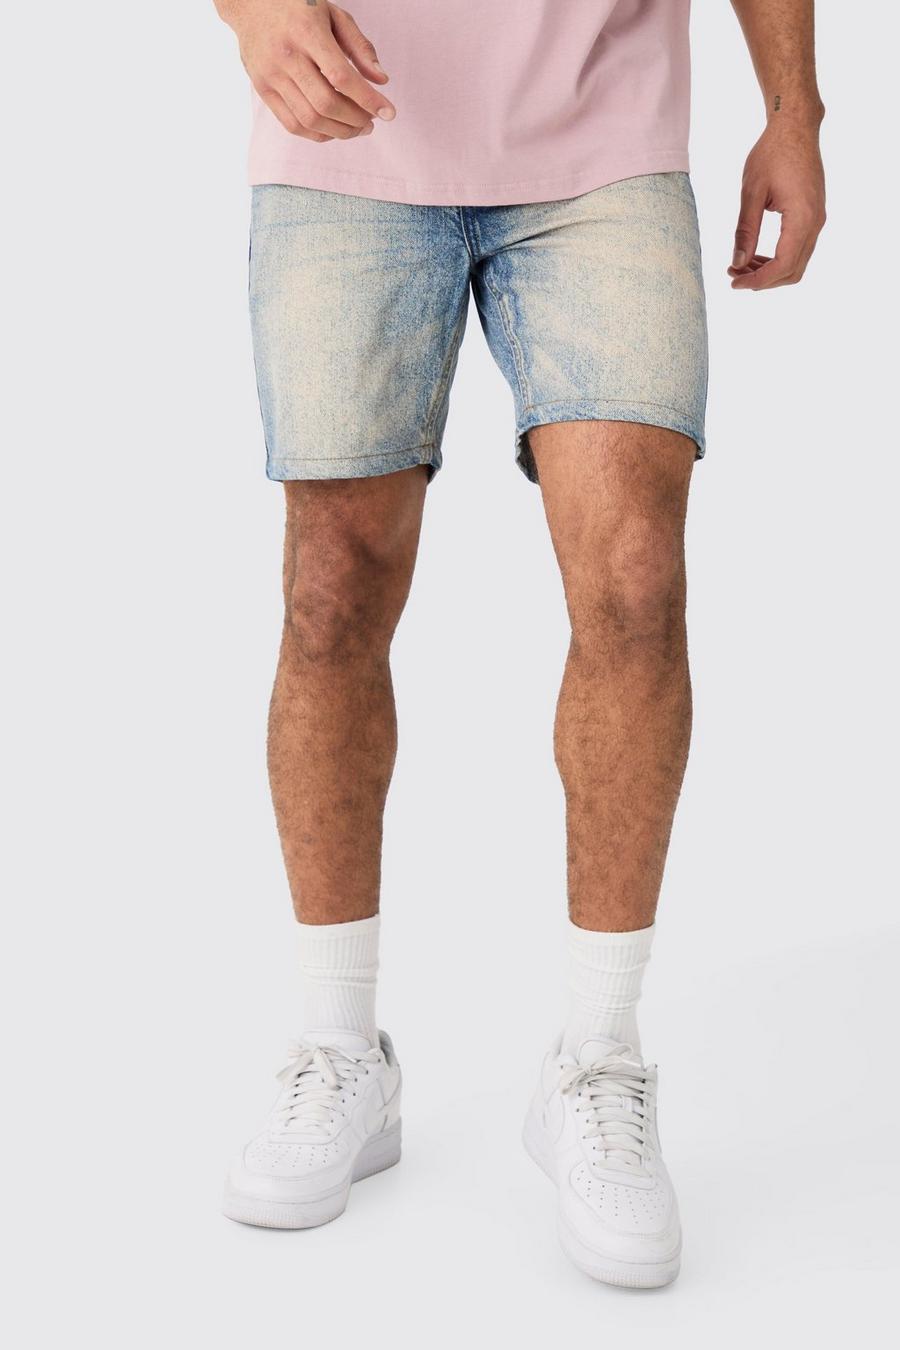 Pantalones cortos vaqueros ajustados sin tratar en azul vintage, Vintage blue